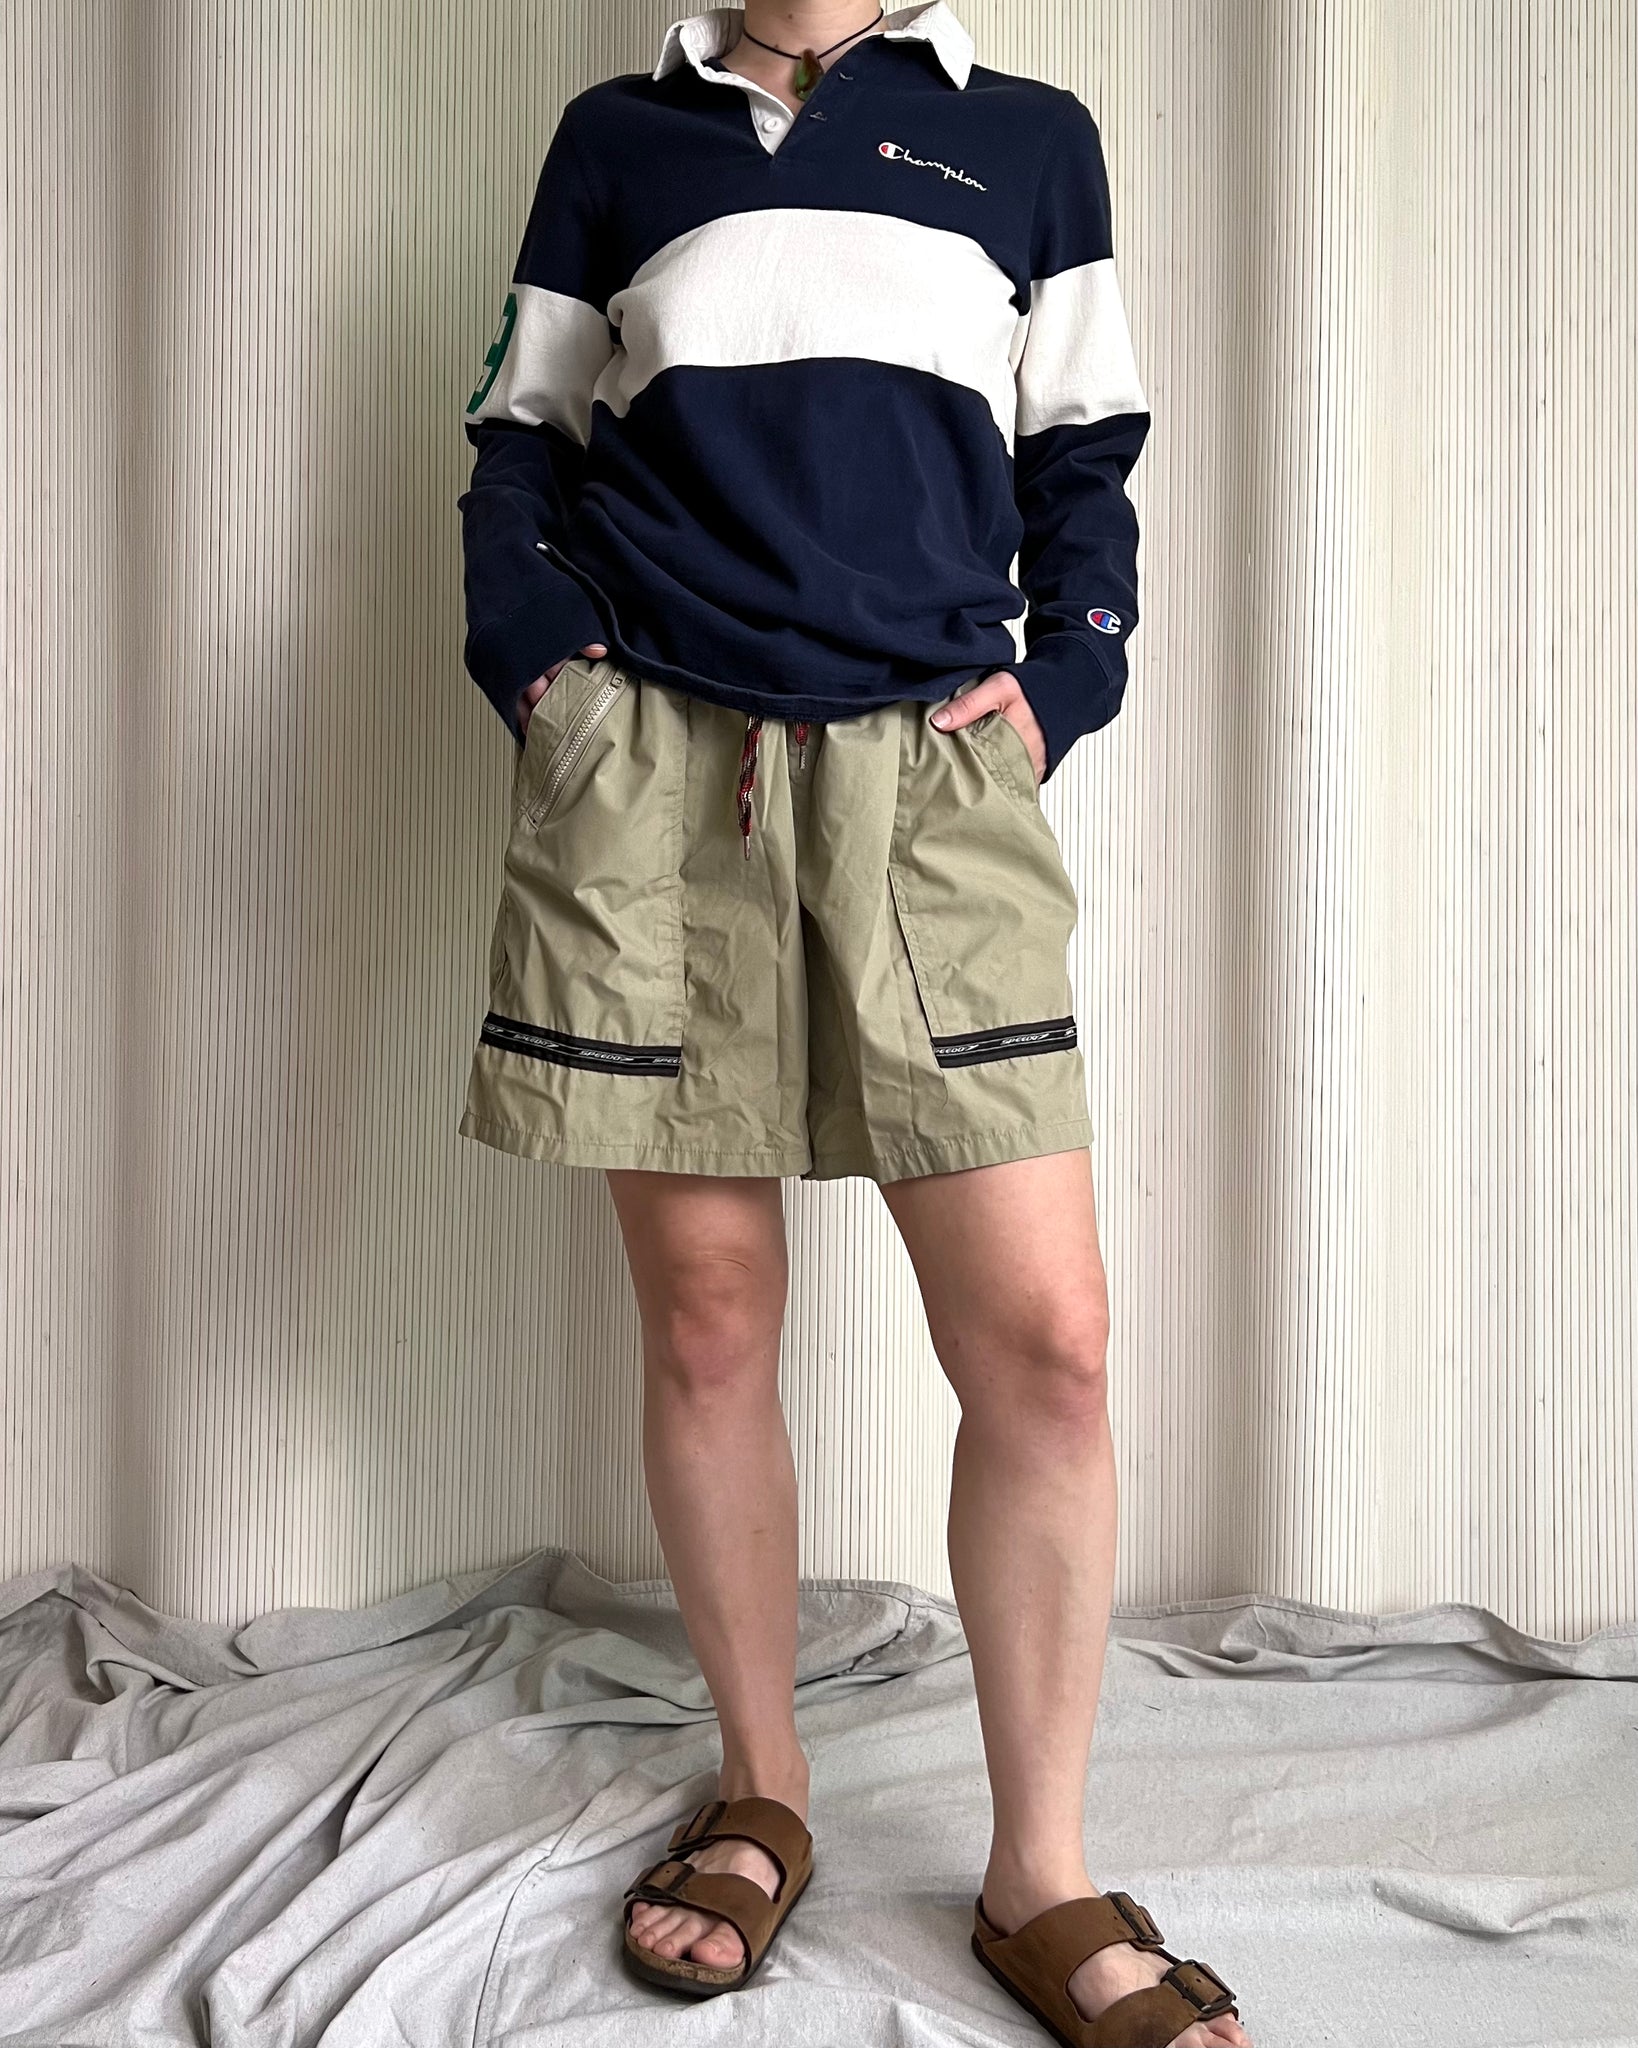 90s Speedo Khaki Sport Shorts (Mens L)